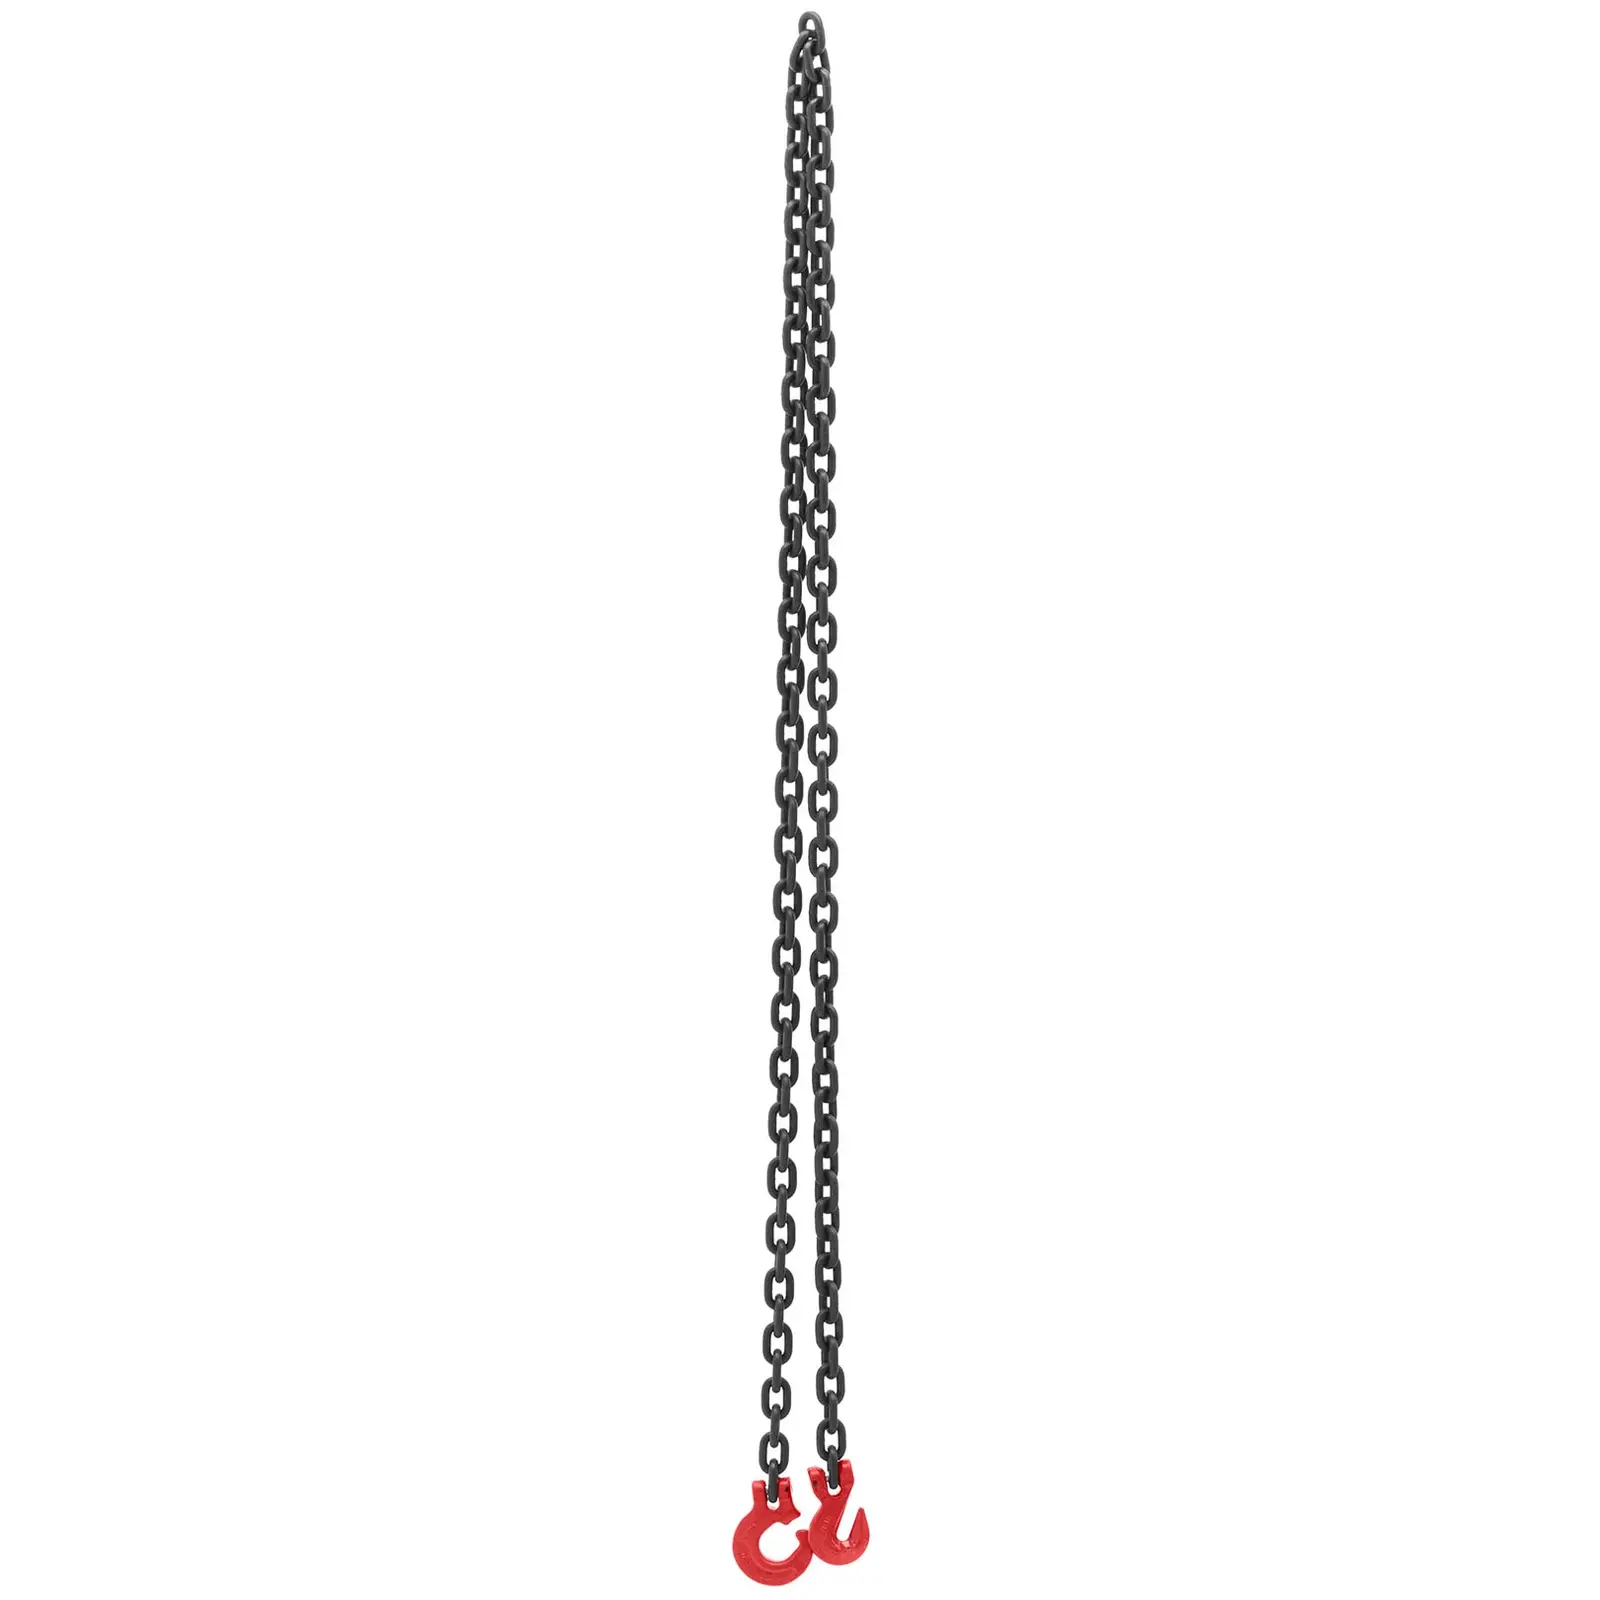 Řetězová smyčka - 2 000 kg - 2,5 m - černý/červený